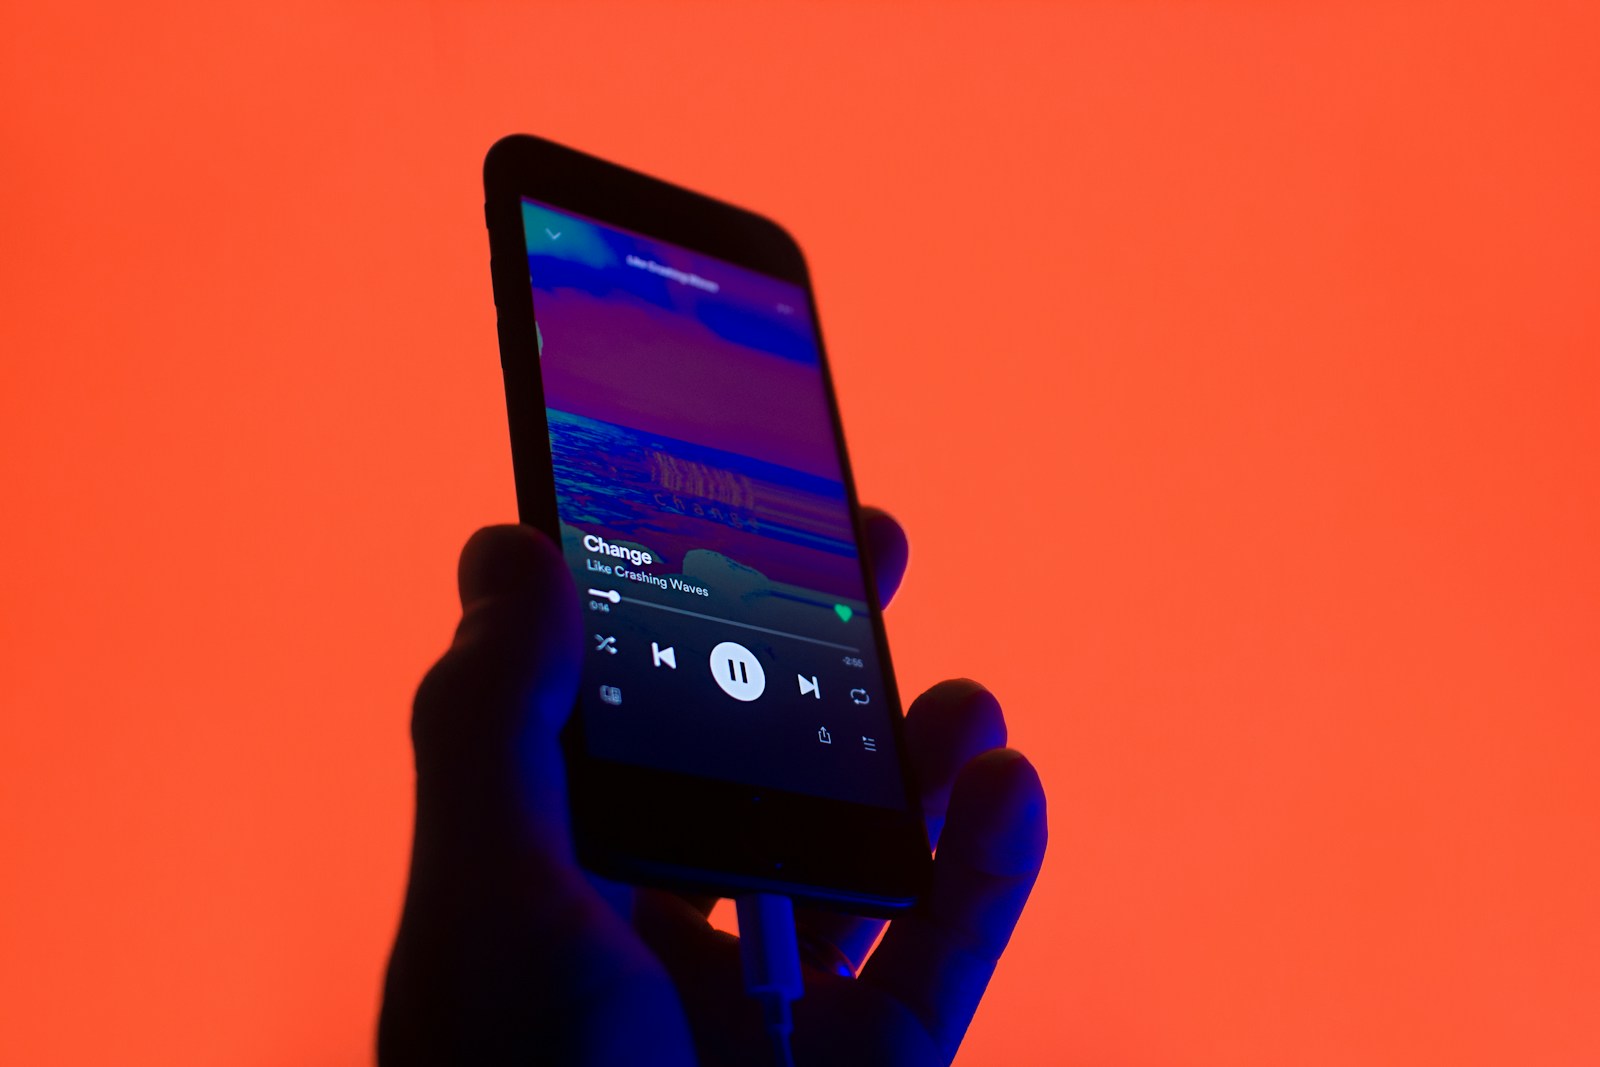 εφαρμογές μουσικής εκτός σύνδεσης για Android